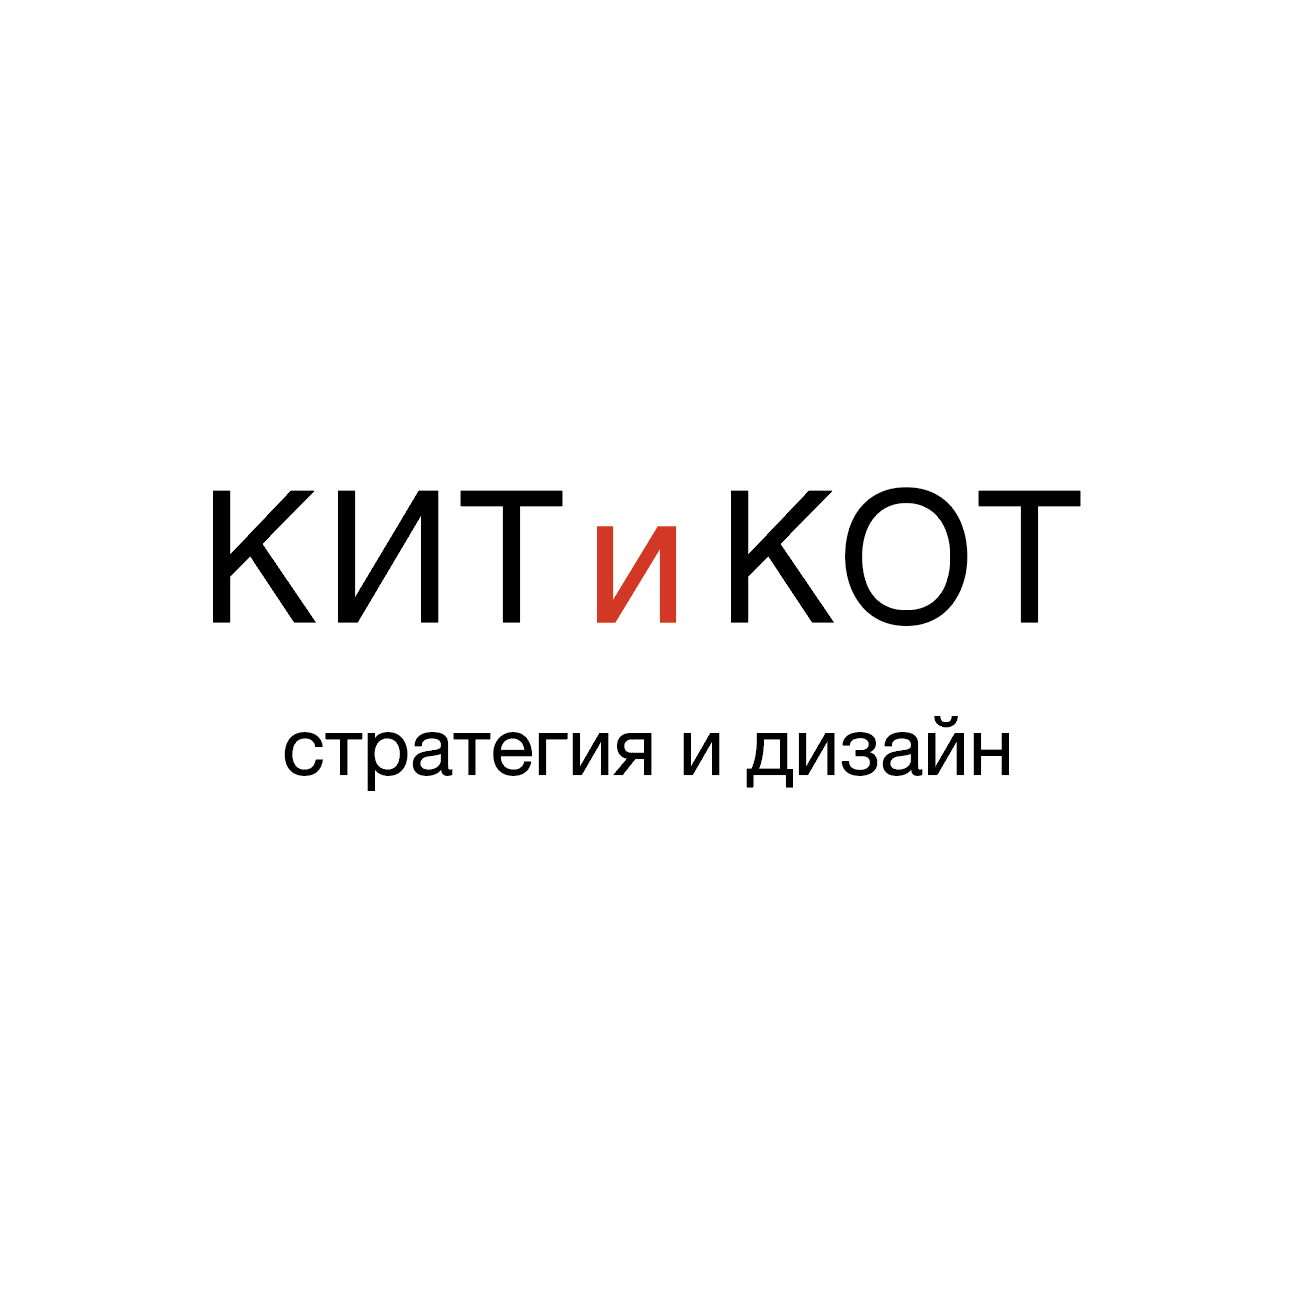 info@kitkot.ru